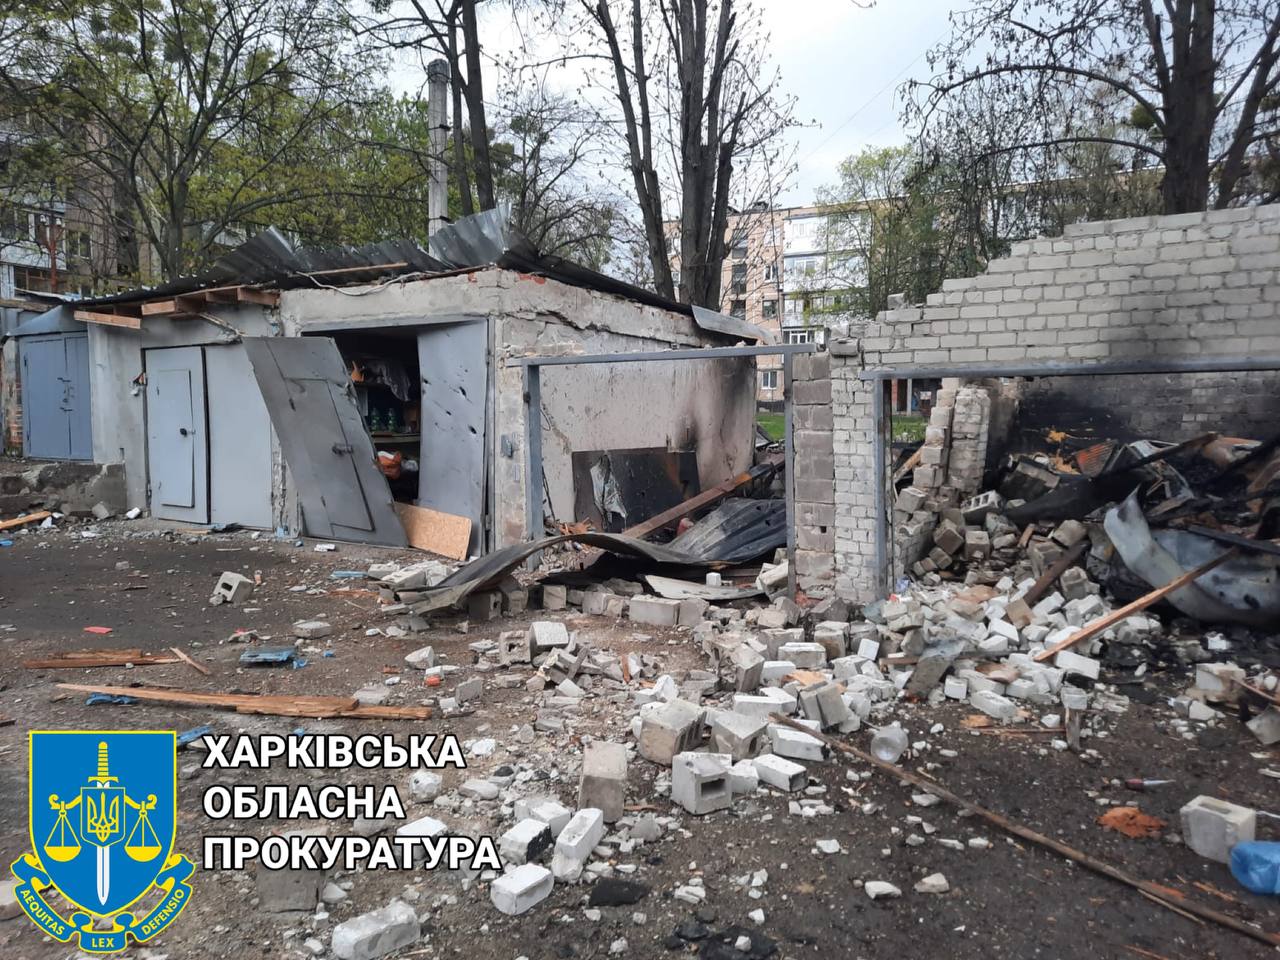 Гаражи превратились в руины после обстрела в Харькове